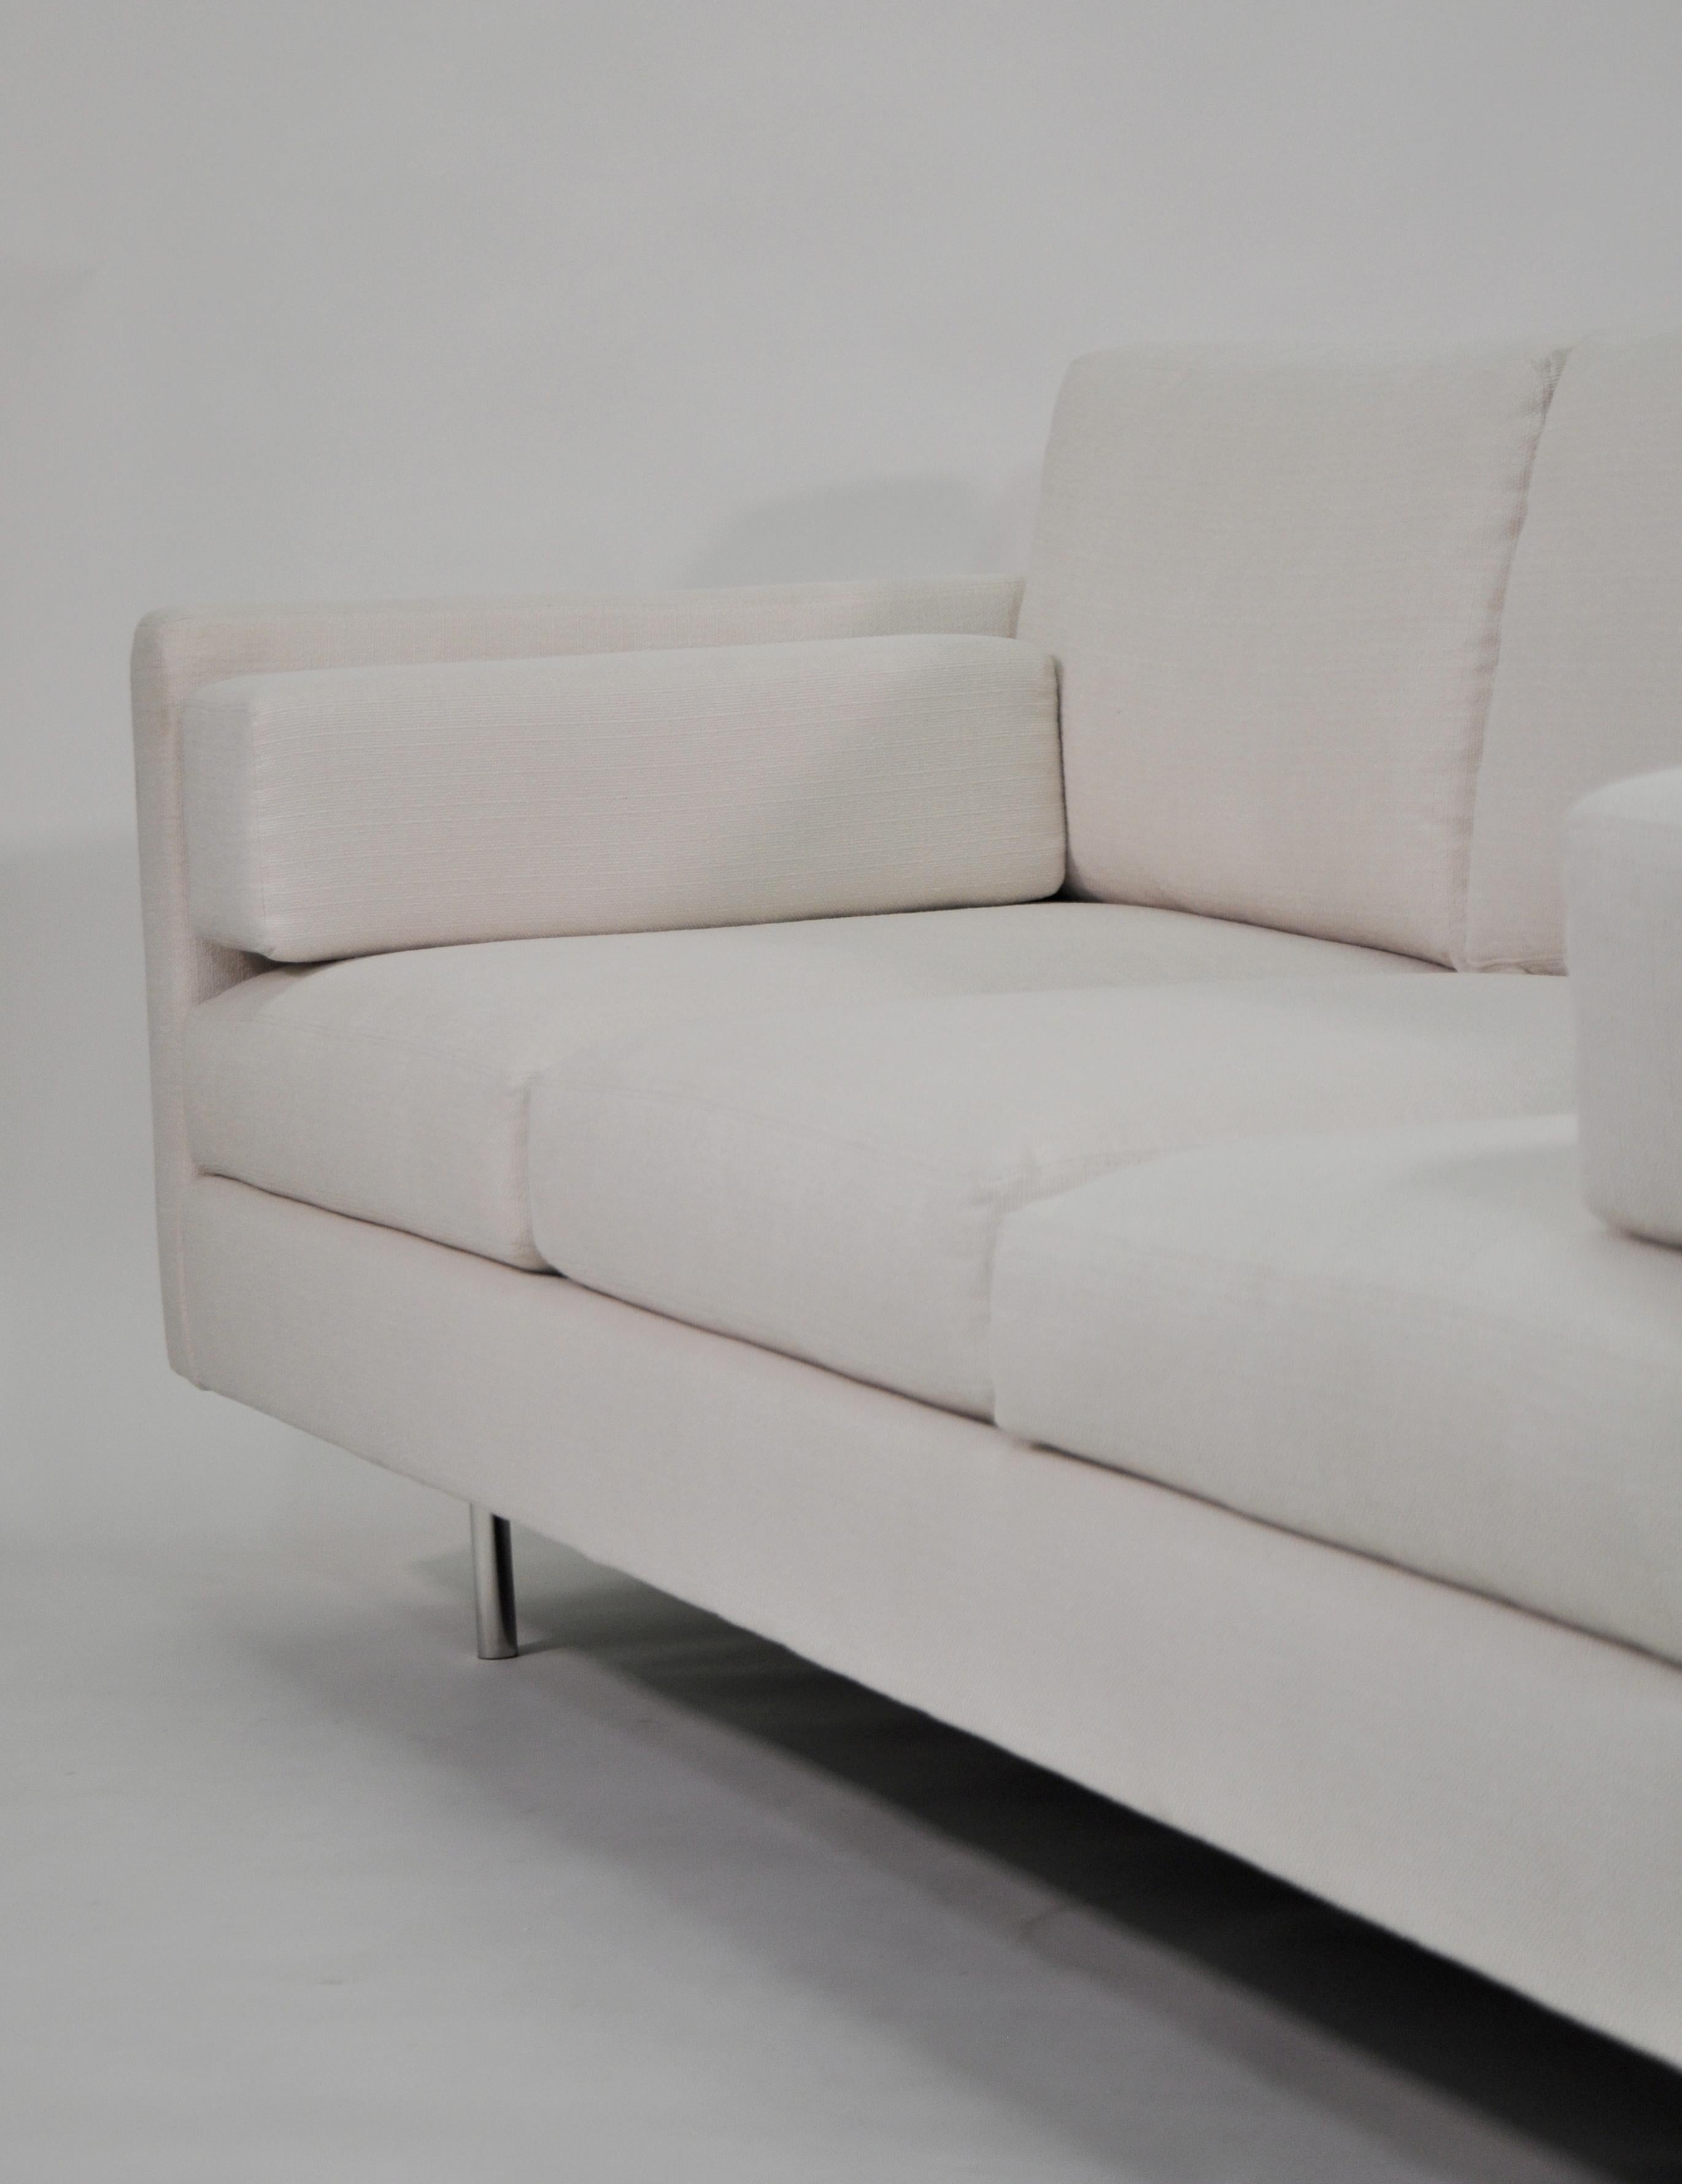 Contemporary Milo Baughman White Sofa, Thayer Coggin 855 Design Classic